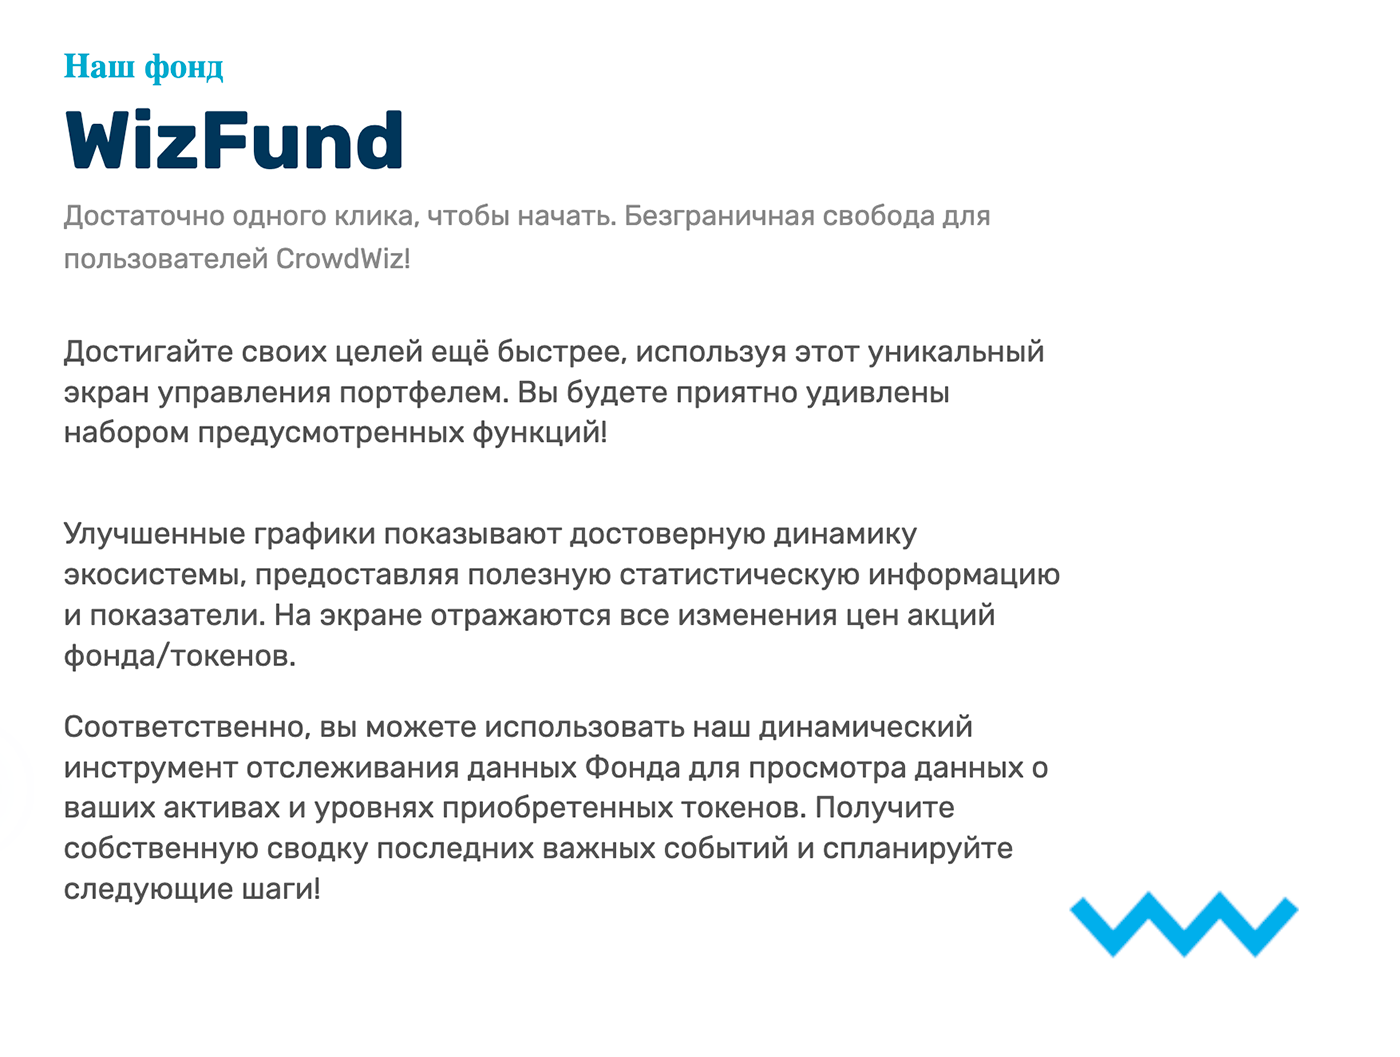 Описание фонда WizFund на сайте проекта не позволило мне понять, о чем конкретно идет речь